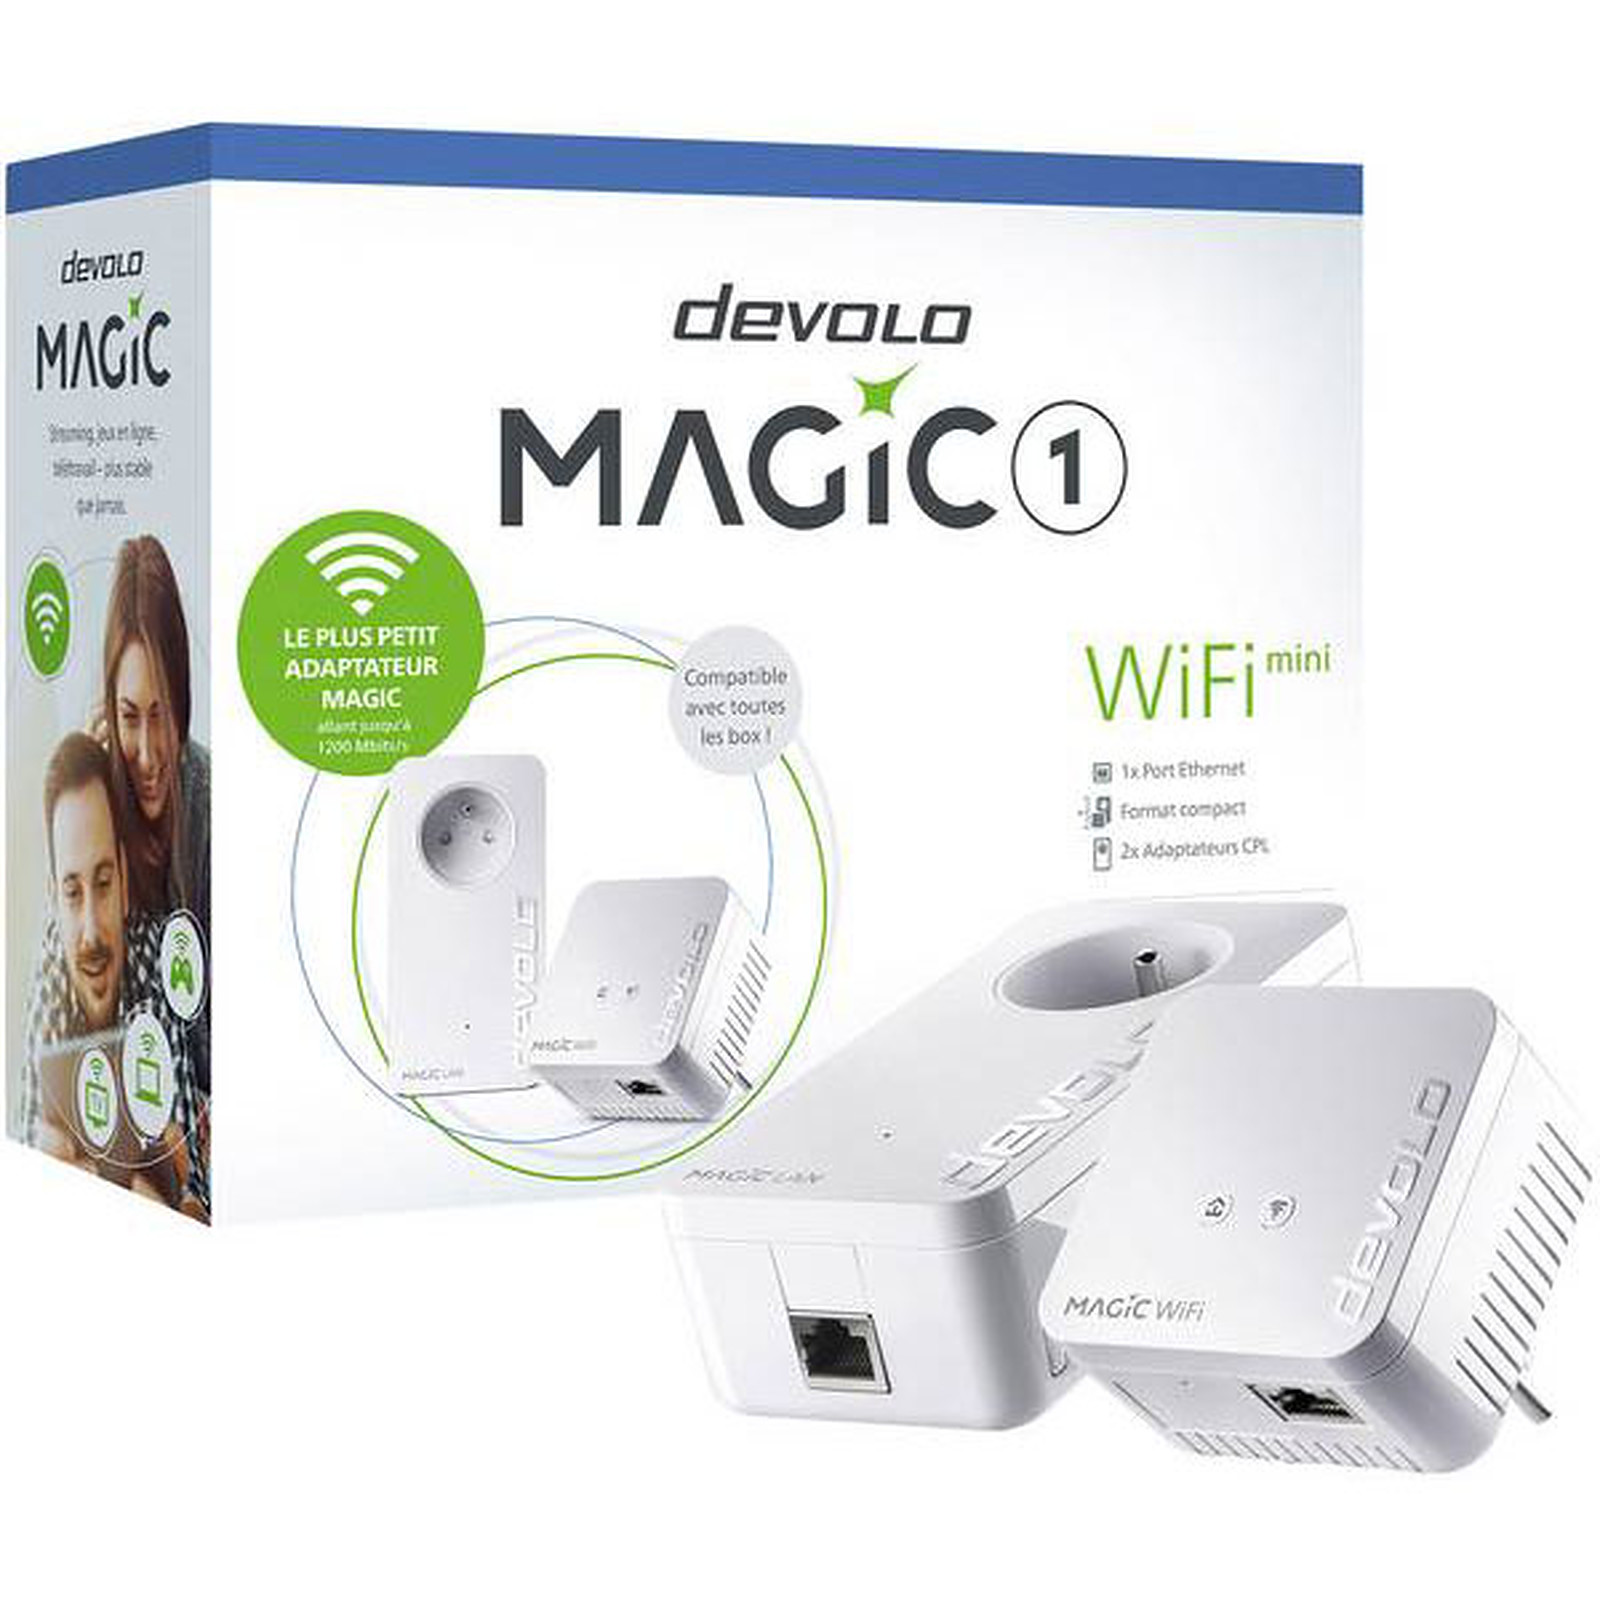 devolo Magic 1 WiFi mini - Kit de demarrage - CPL Devolo AG